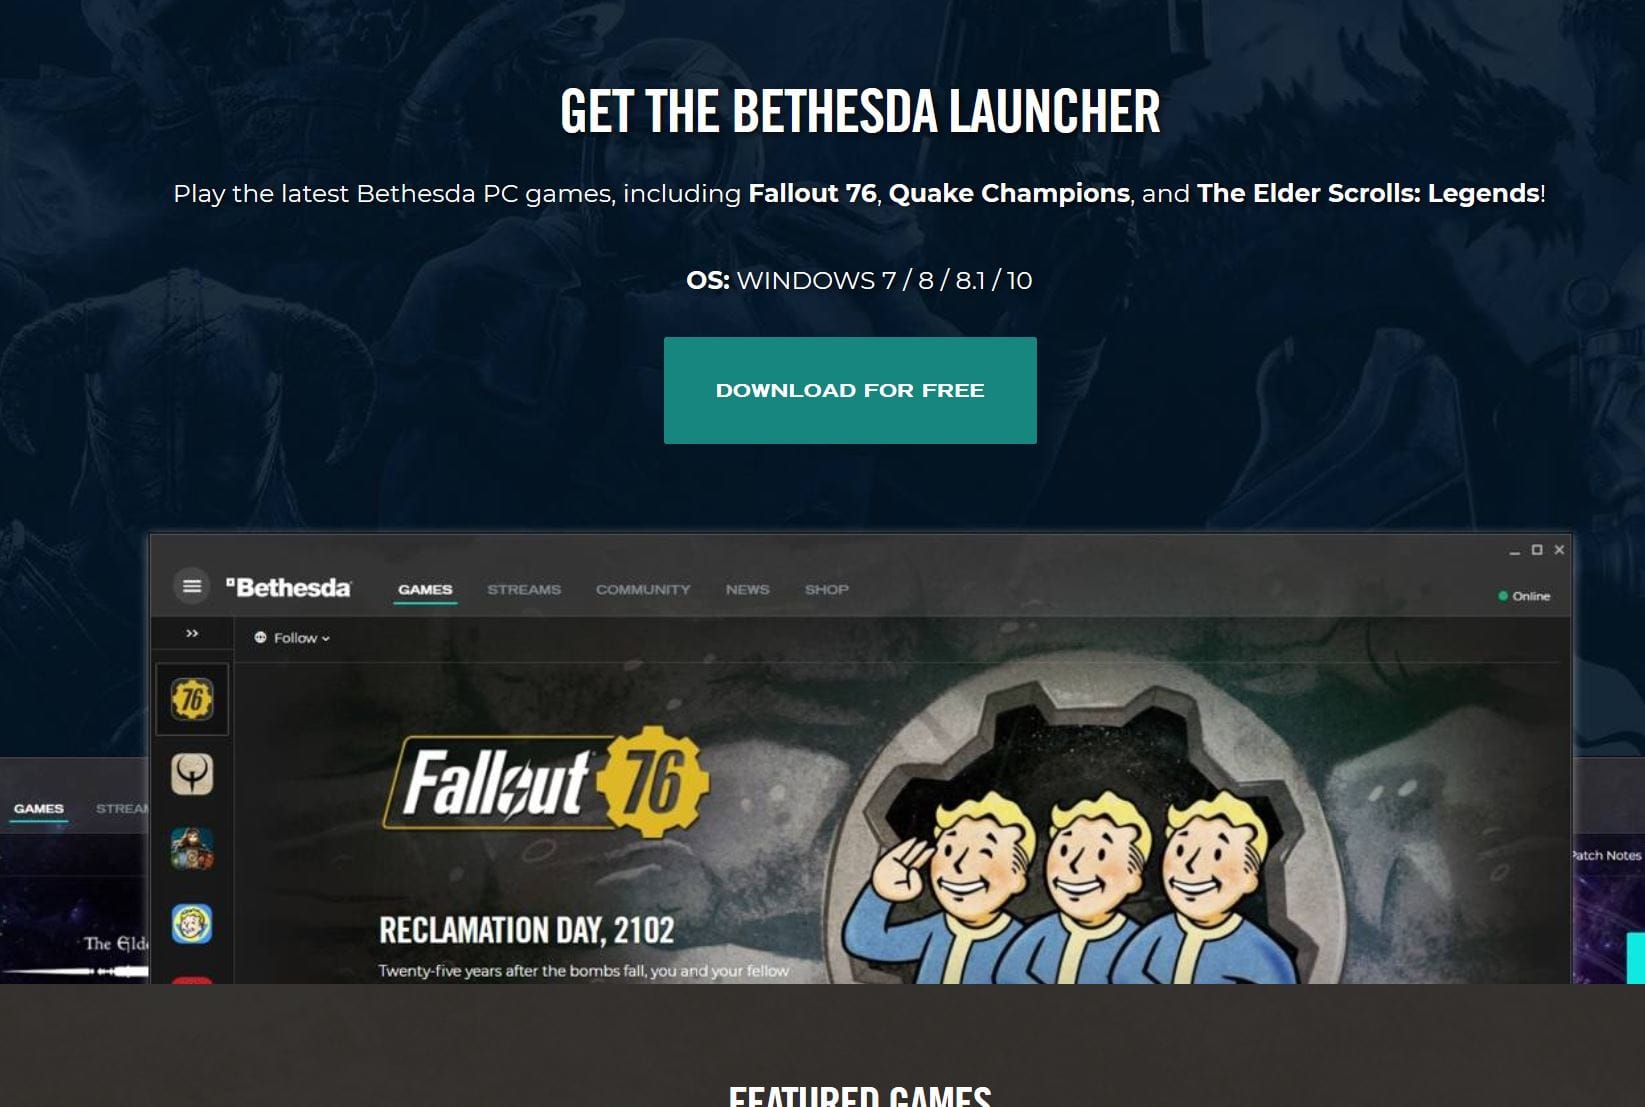 Im letzten Schritt müssen Sie den Bethesda-Launcher herunterladen, um das Spiel installieren zu können. Befolgen Sie dafür die Anweisungen auf dem Bildschirm.